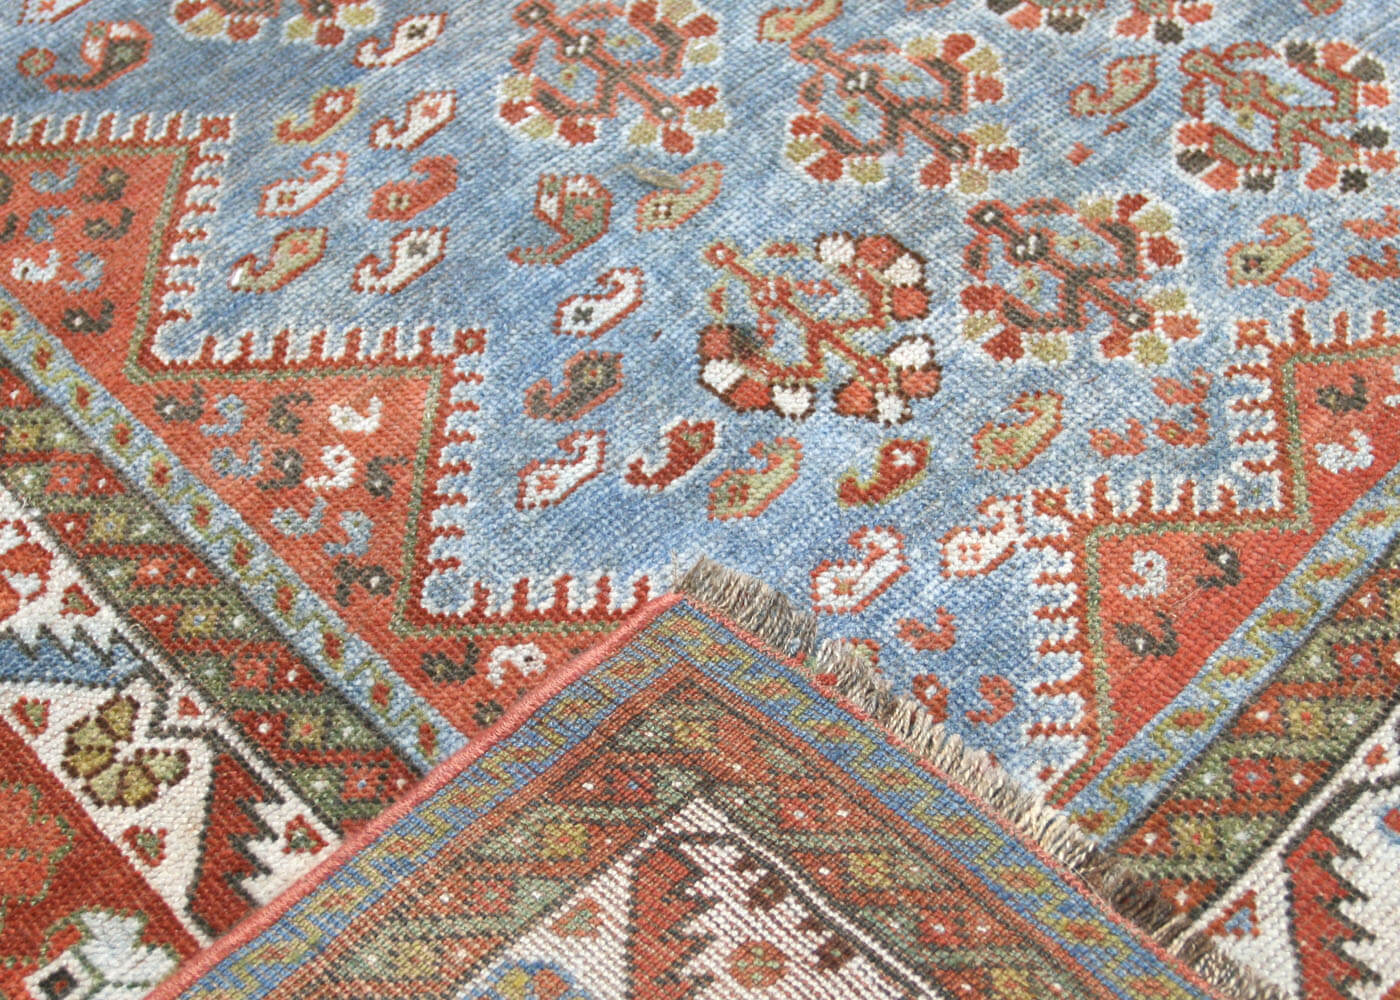 Semi Antique Persian Shiraz Rug - 7'3" x 10'4"